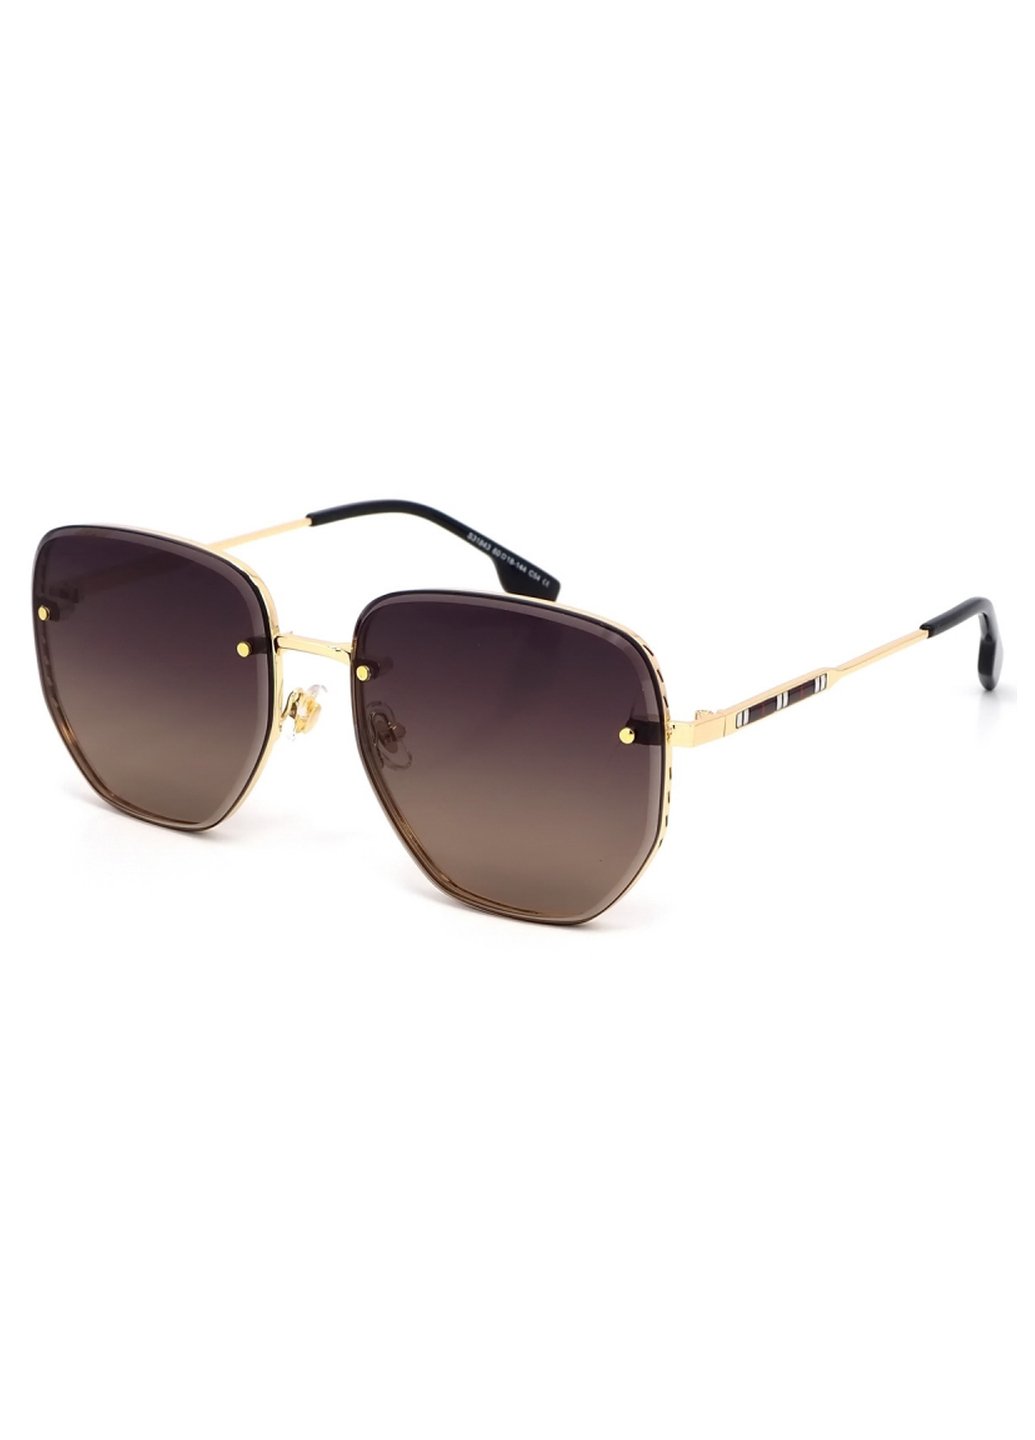 Купить Женские солнцезащитные очки Merlini с поляризацией S31843 117129 - Золотистый в интернет-магазине